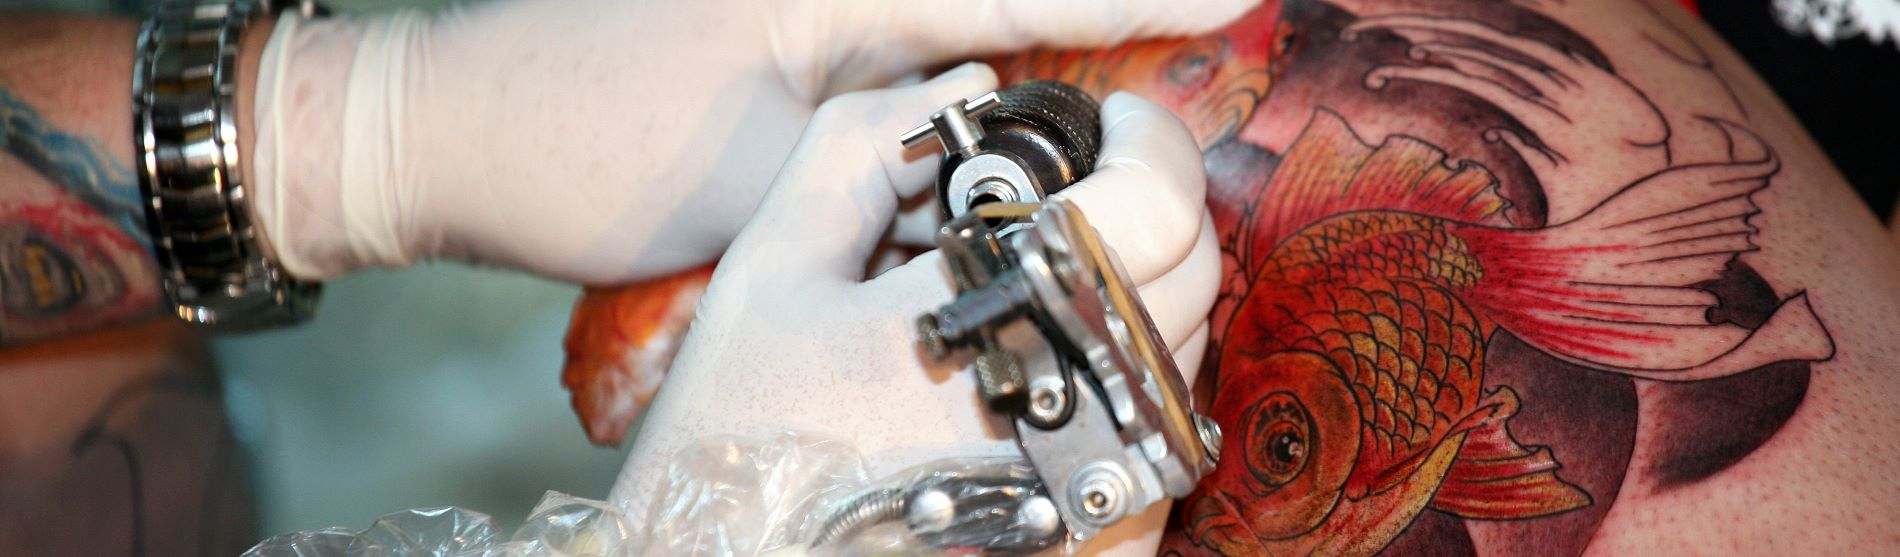 Anthem Tattoo Raises Nearly $4,000 For The Leukemia & Lymphoma Society